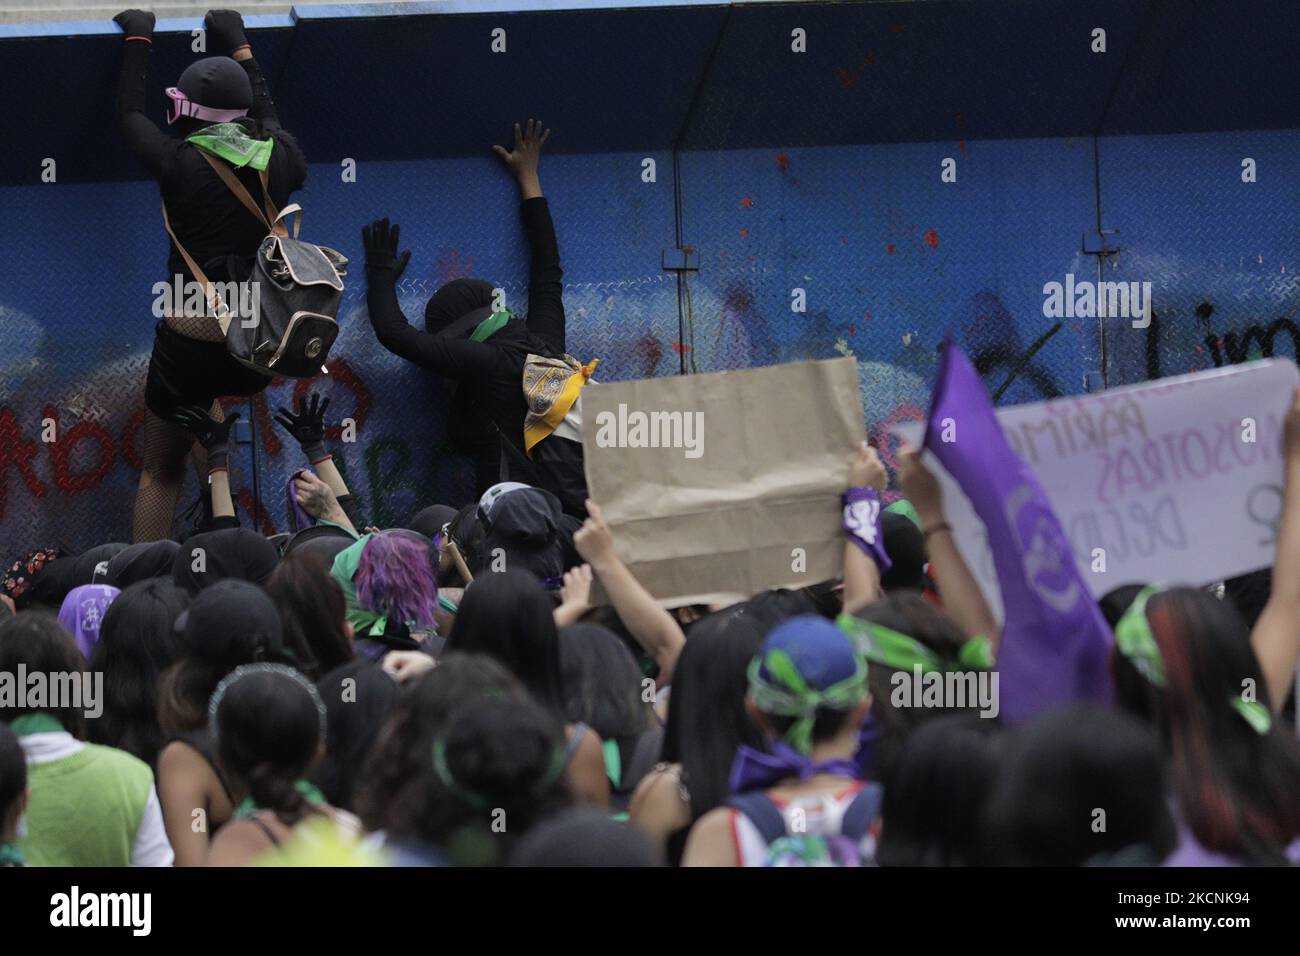 Mitglieder des feministischen Schwarzen Blocks versuchen, Zäune unter dem Unabhängigkeitsengel in Mexiko-Stadt abzureißen, anlässlich des Globalen Aktionstages für legale, freie und sichere Abtreibungen in Mexiko und Lateinamerika. Während des marsches kam es entlang der Strecke zu Zusammenstößen zwischen Demonstranten und Polizei. (Foto von Gerardo Vieyra/NurPhoto) Stockfoto